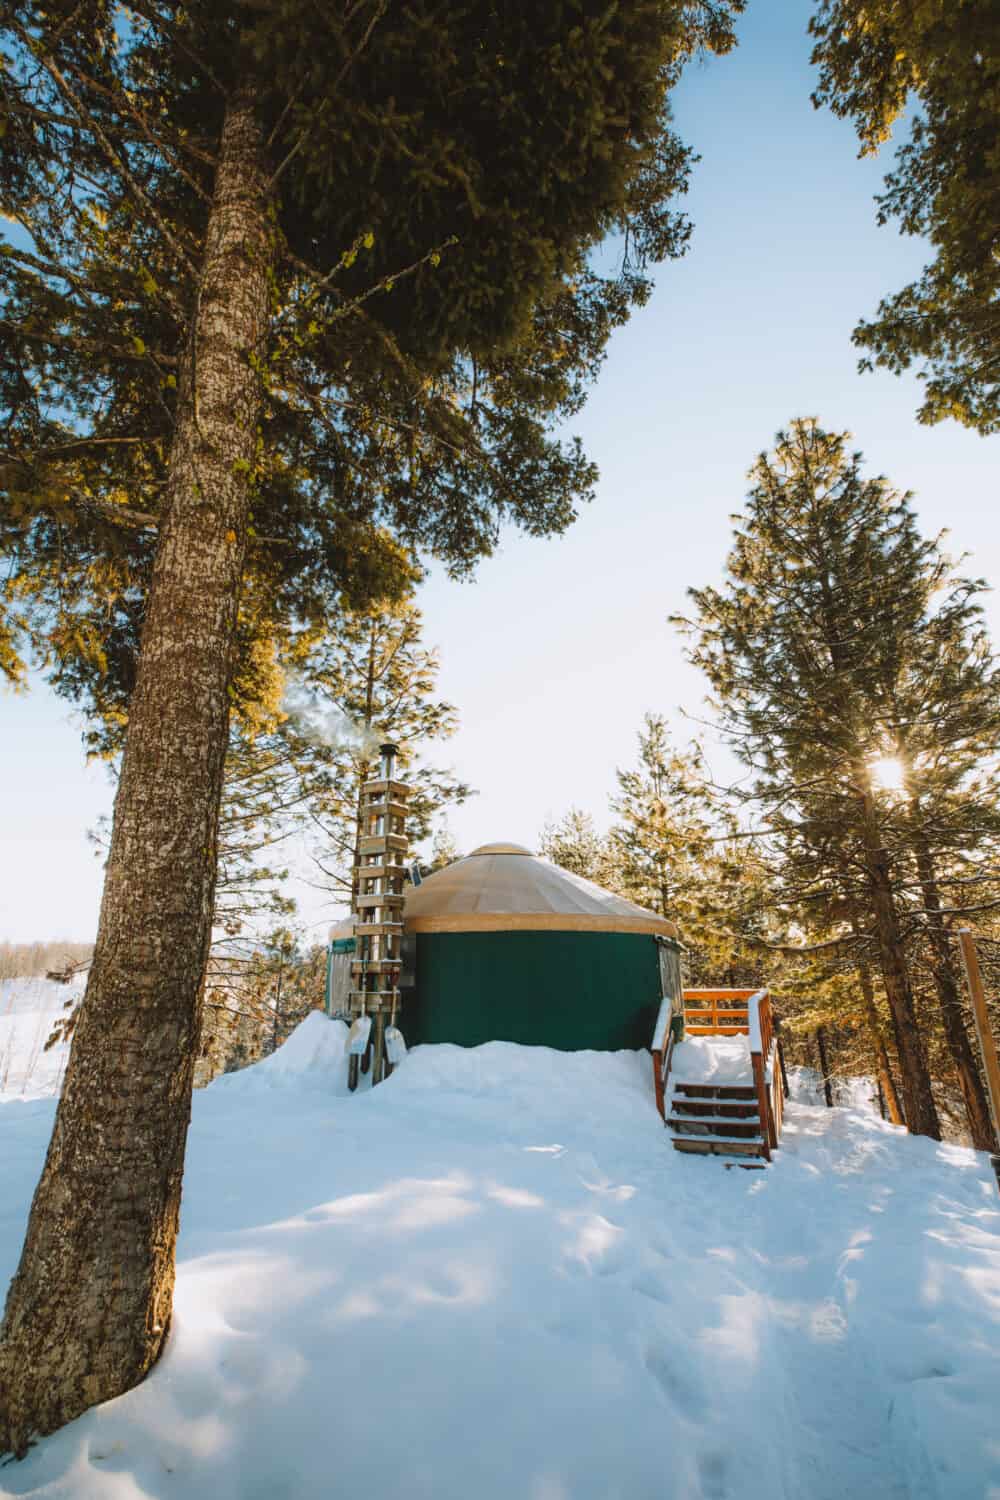 https://www.themandagies.com/wp-content/uploads/2021/01/Idaho-In-The-Winter-Yurt-Camping-The-Mandagies-1000x1500.jpg